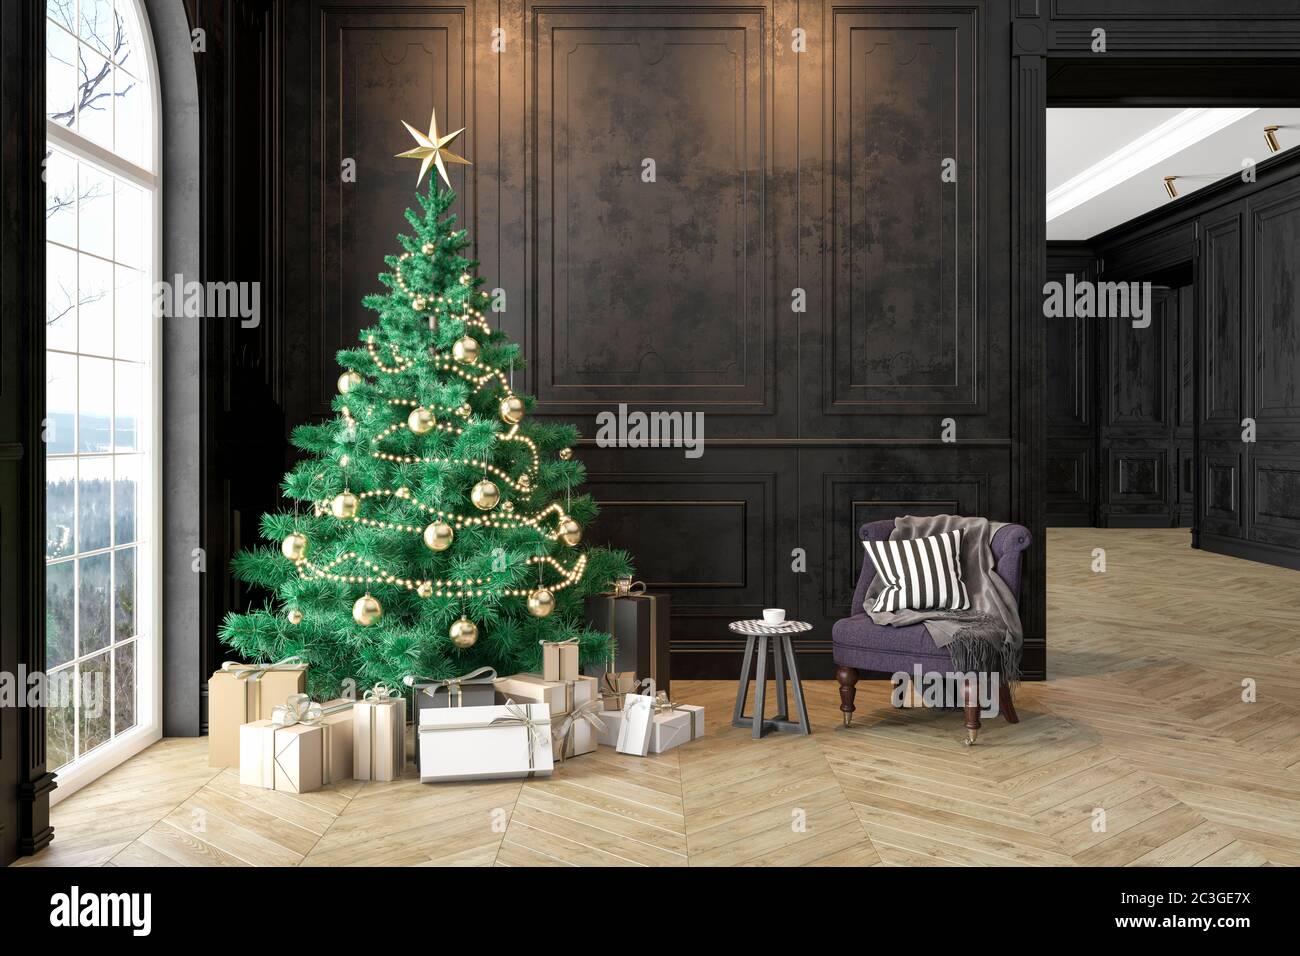 Interno nero con albero di natale, poltrona, regali, cuscino, pannelli parete. Immagine di rendering 3D mock-up. Foto Stock